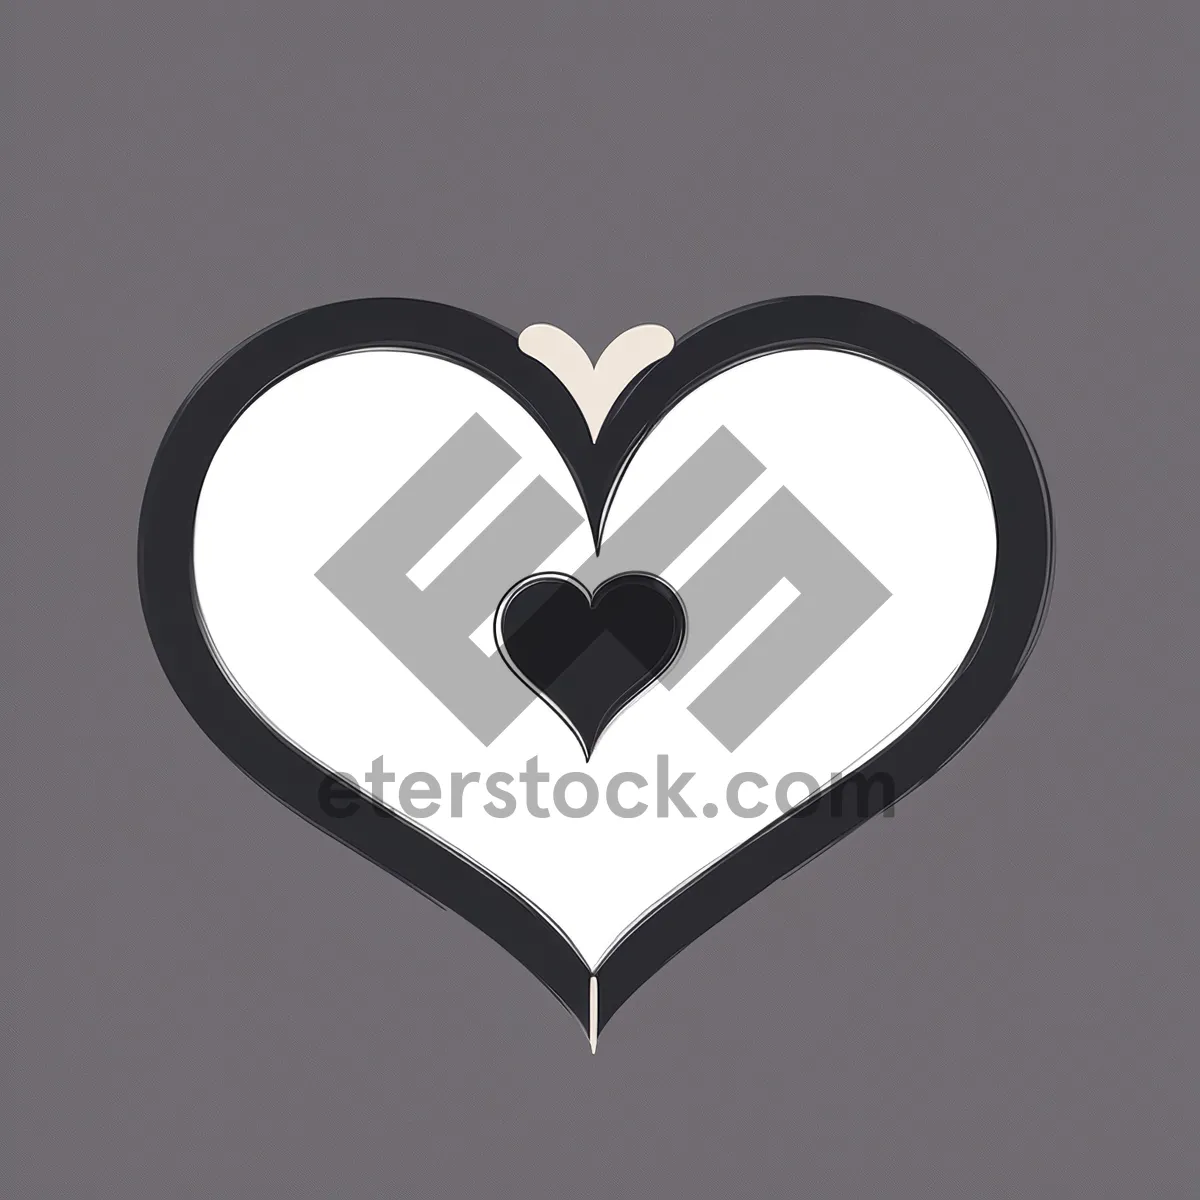 Picture of Love Symbol Stencil Graphic: Black Silhouette Art Design